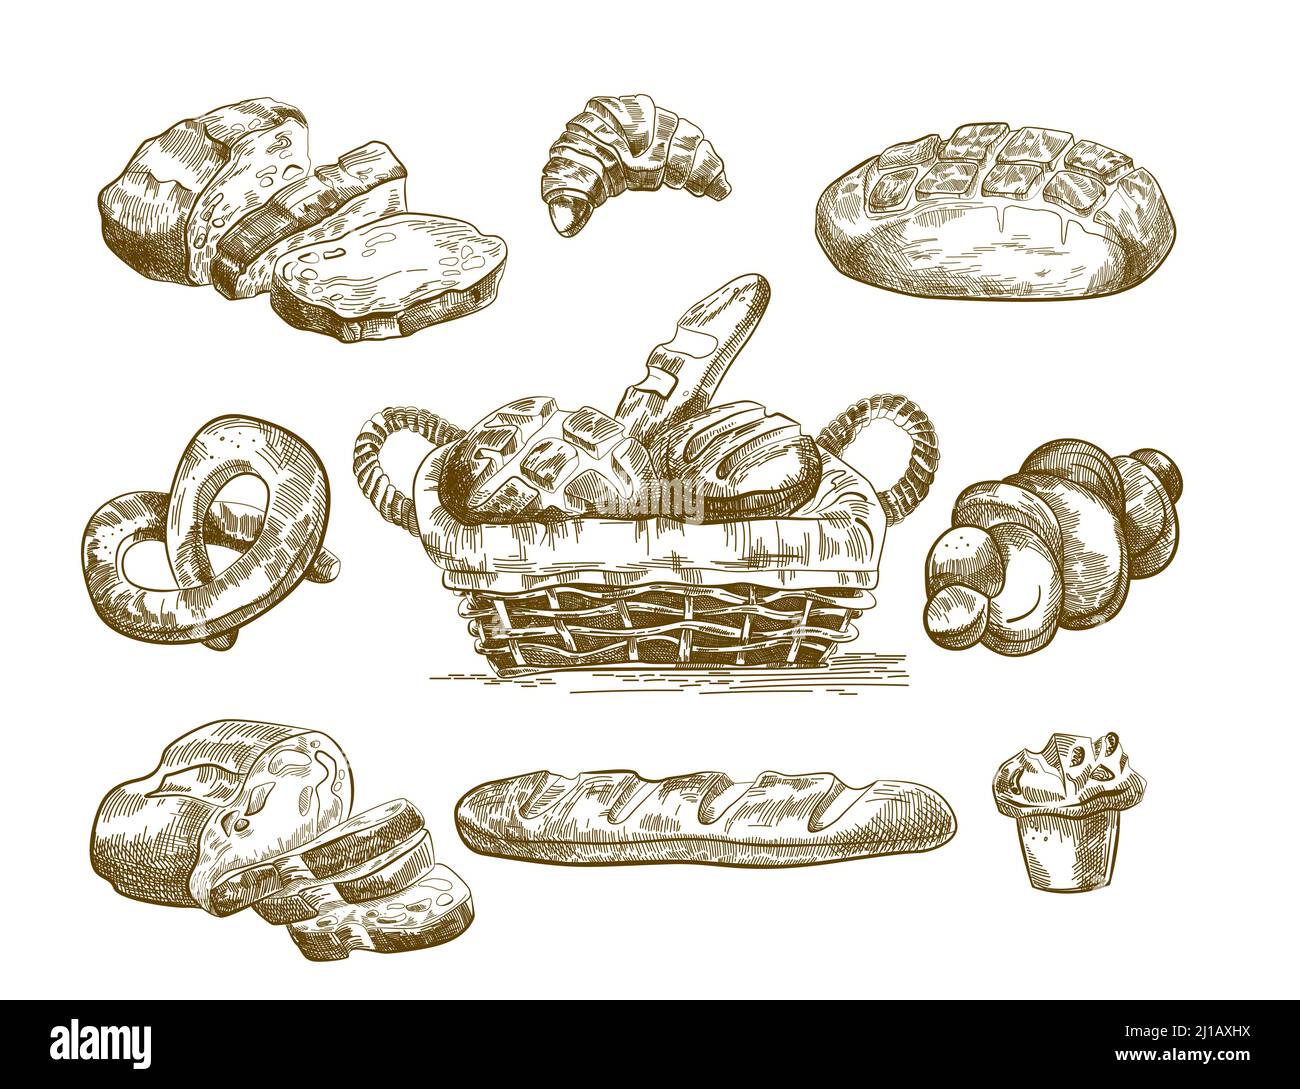 Schizzi di prodotti da forno disegnati a mano. Pane fresco, loafs in cesto, panini, pretzel, cupcake. Set di illustrazioni vettoriali per panetteria, cibo gustoso fatto in casa, passato Illustrazione Vettoriale